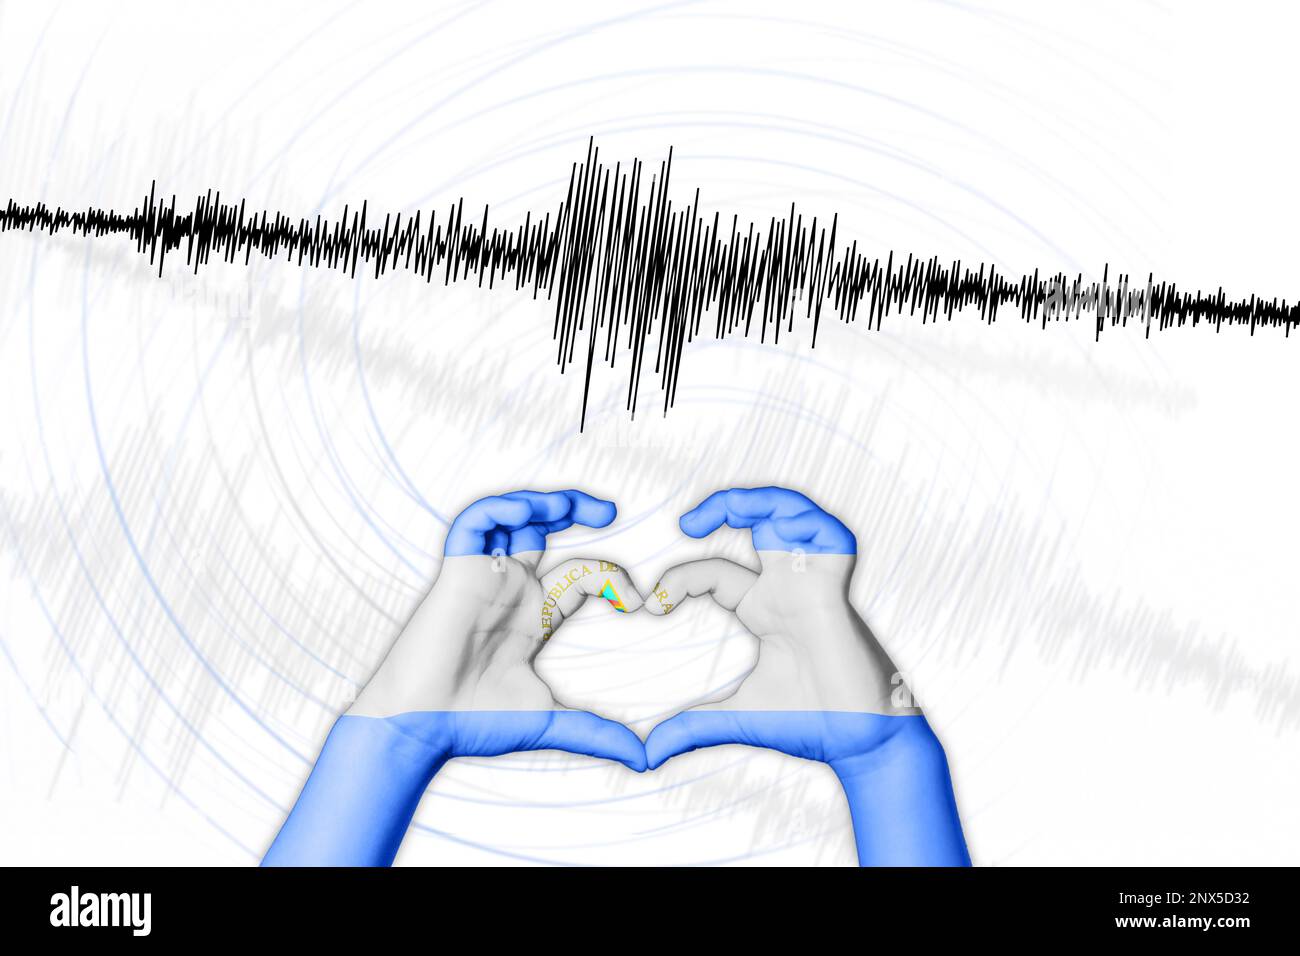 Erdbeben in Nicaragua Symbol der Heart Richter Scale Stockfoto